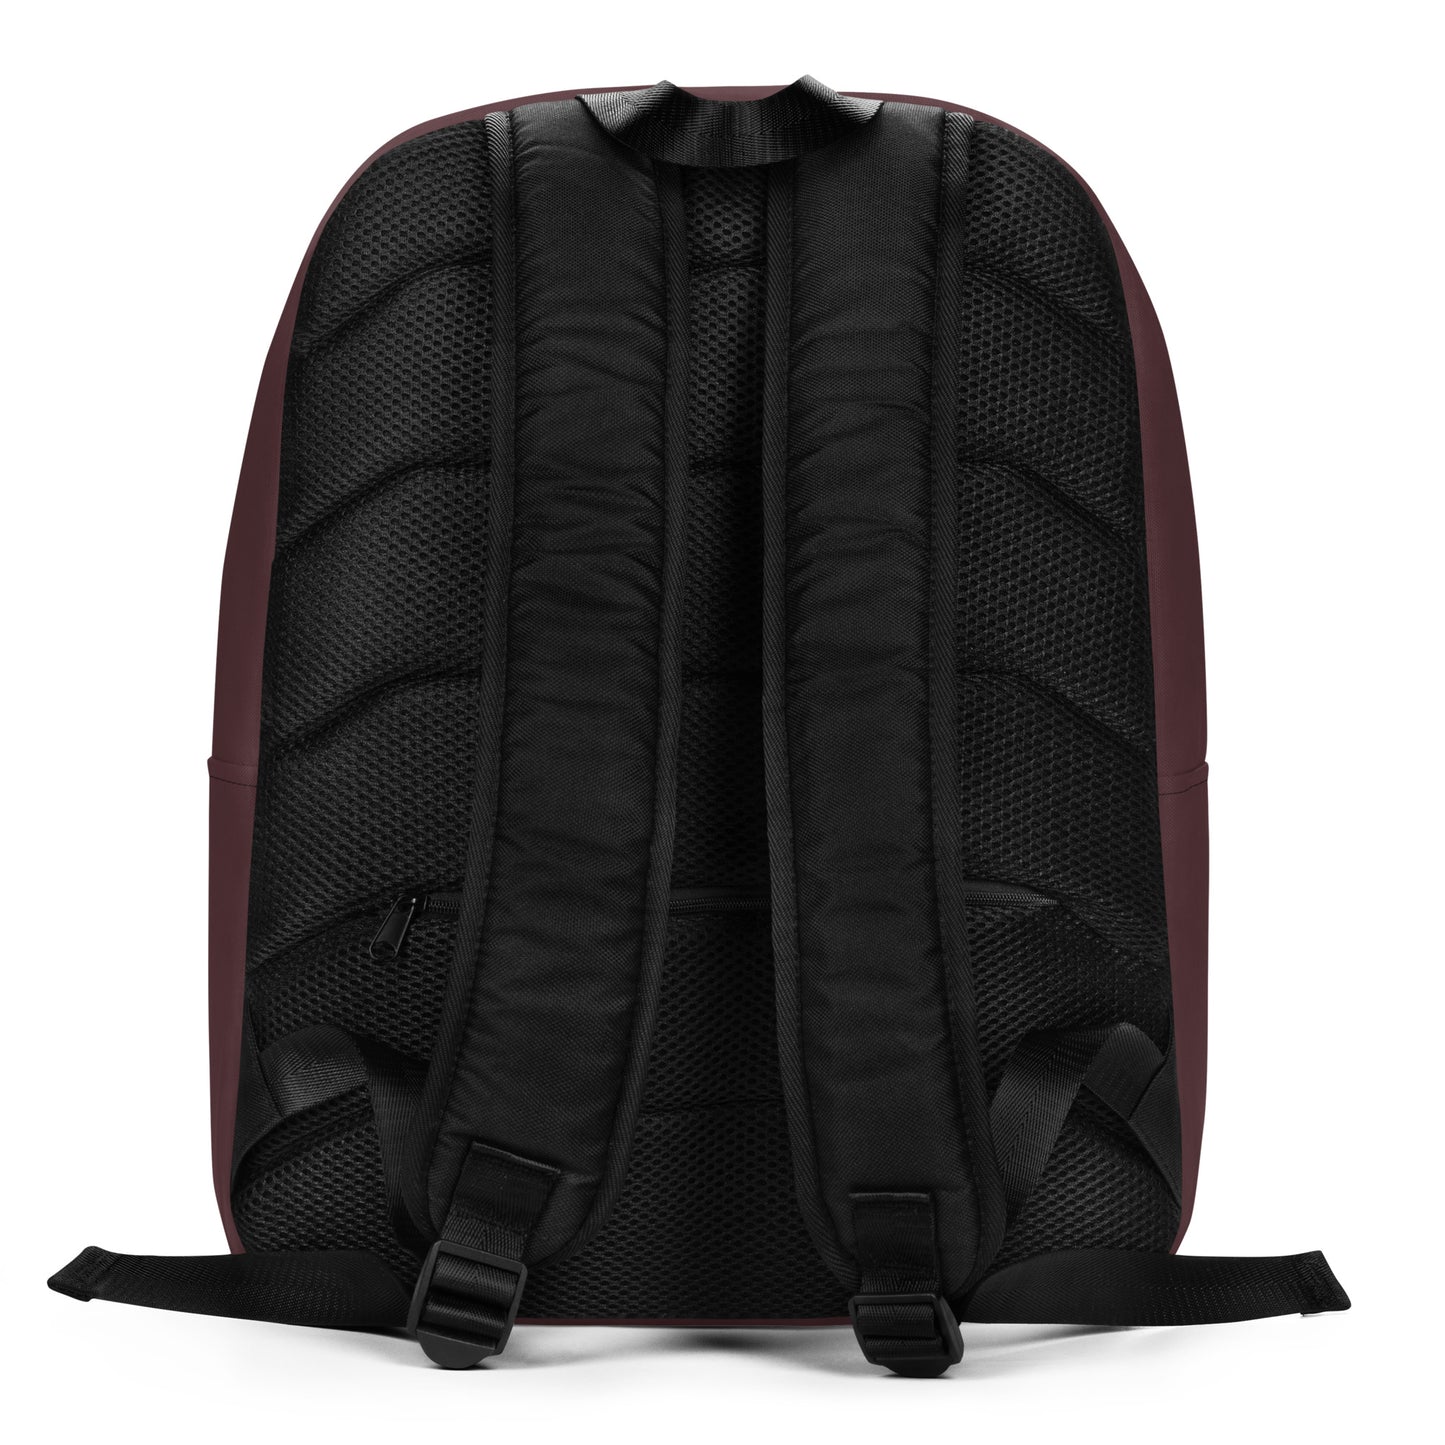 Purple Musk Ox Minimalist Backpack